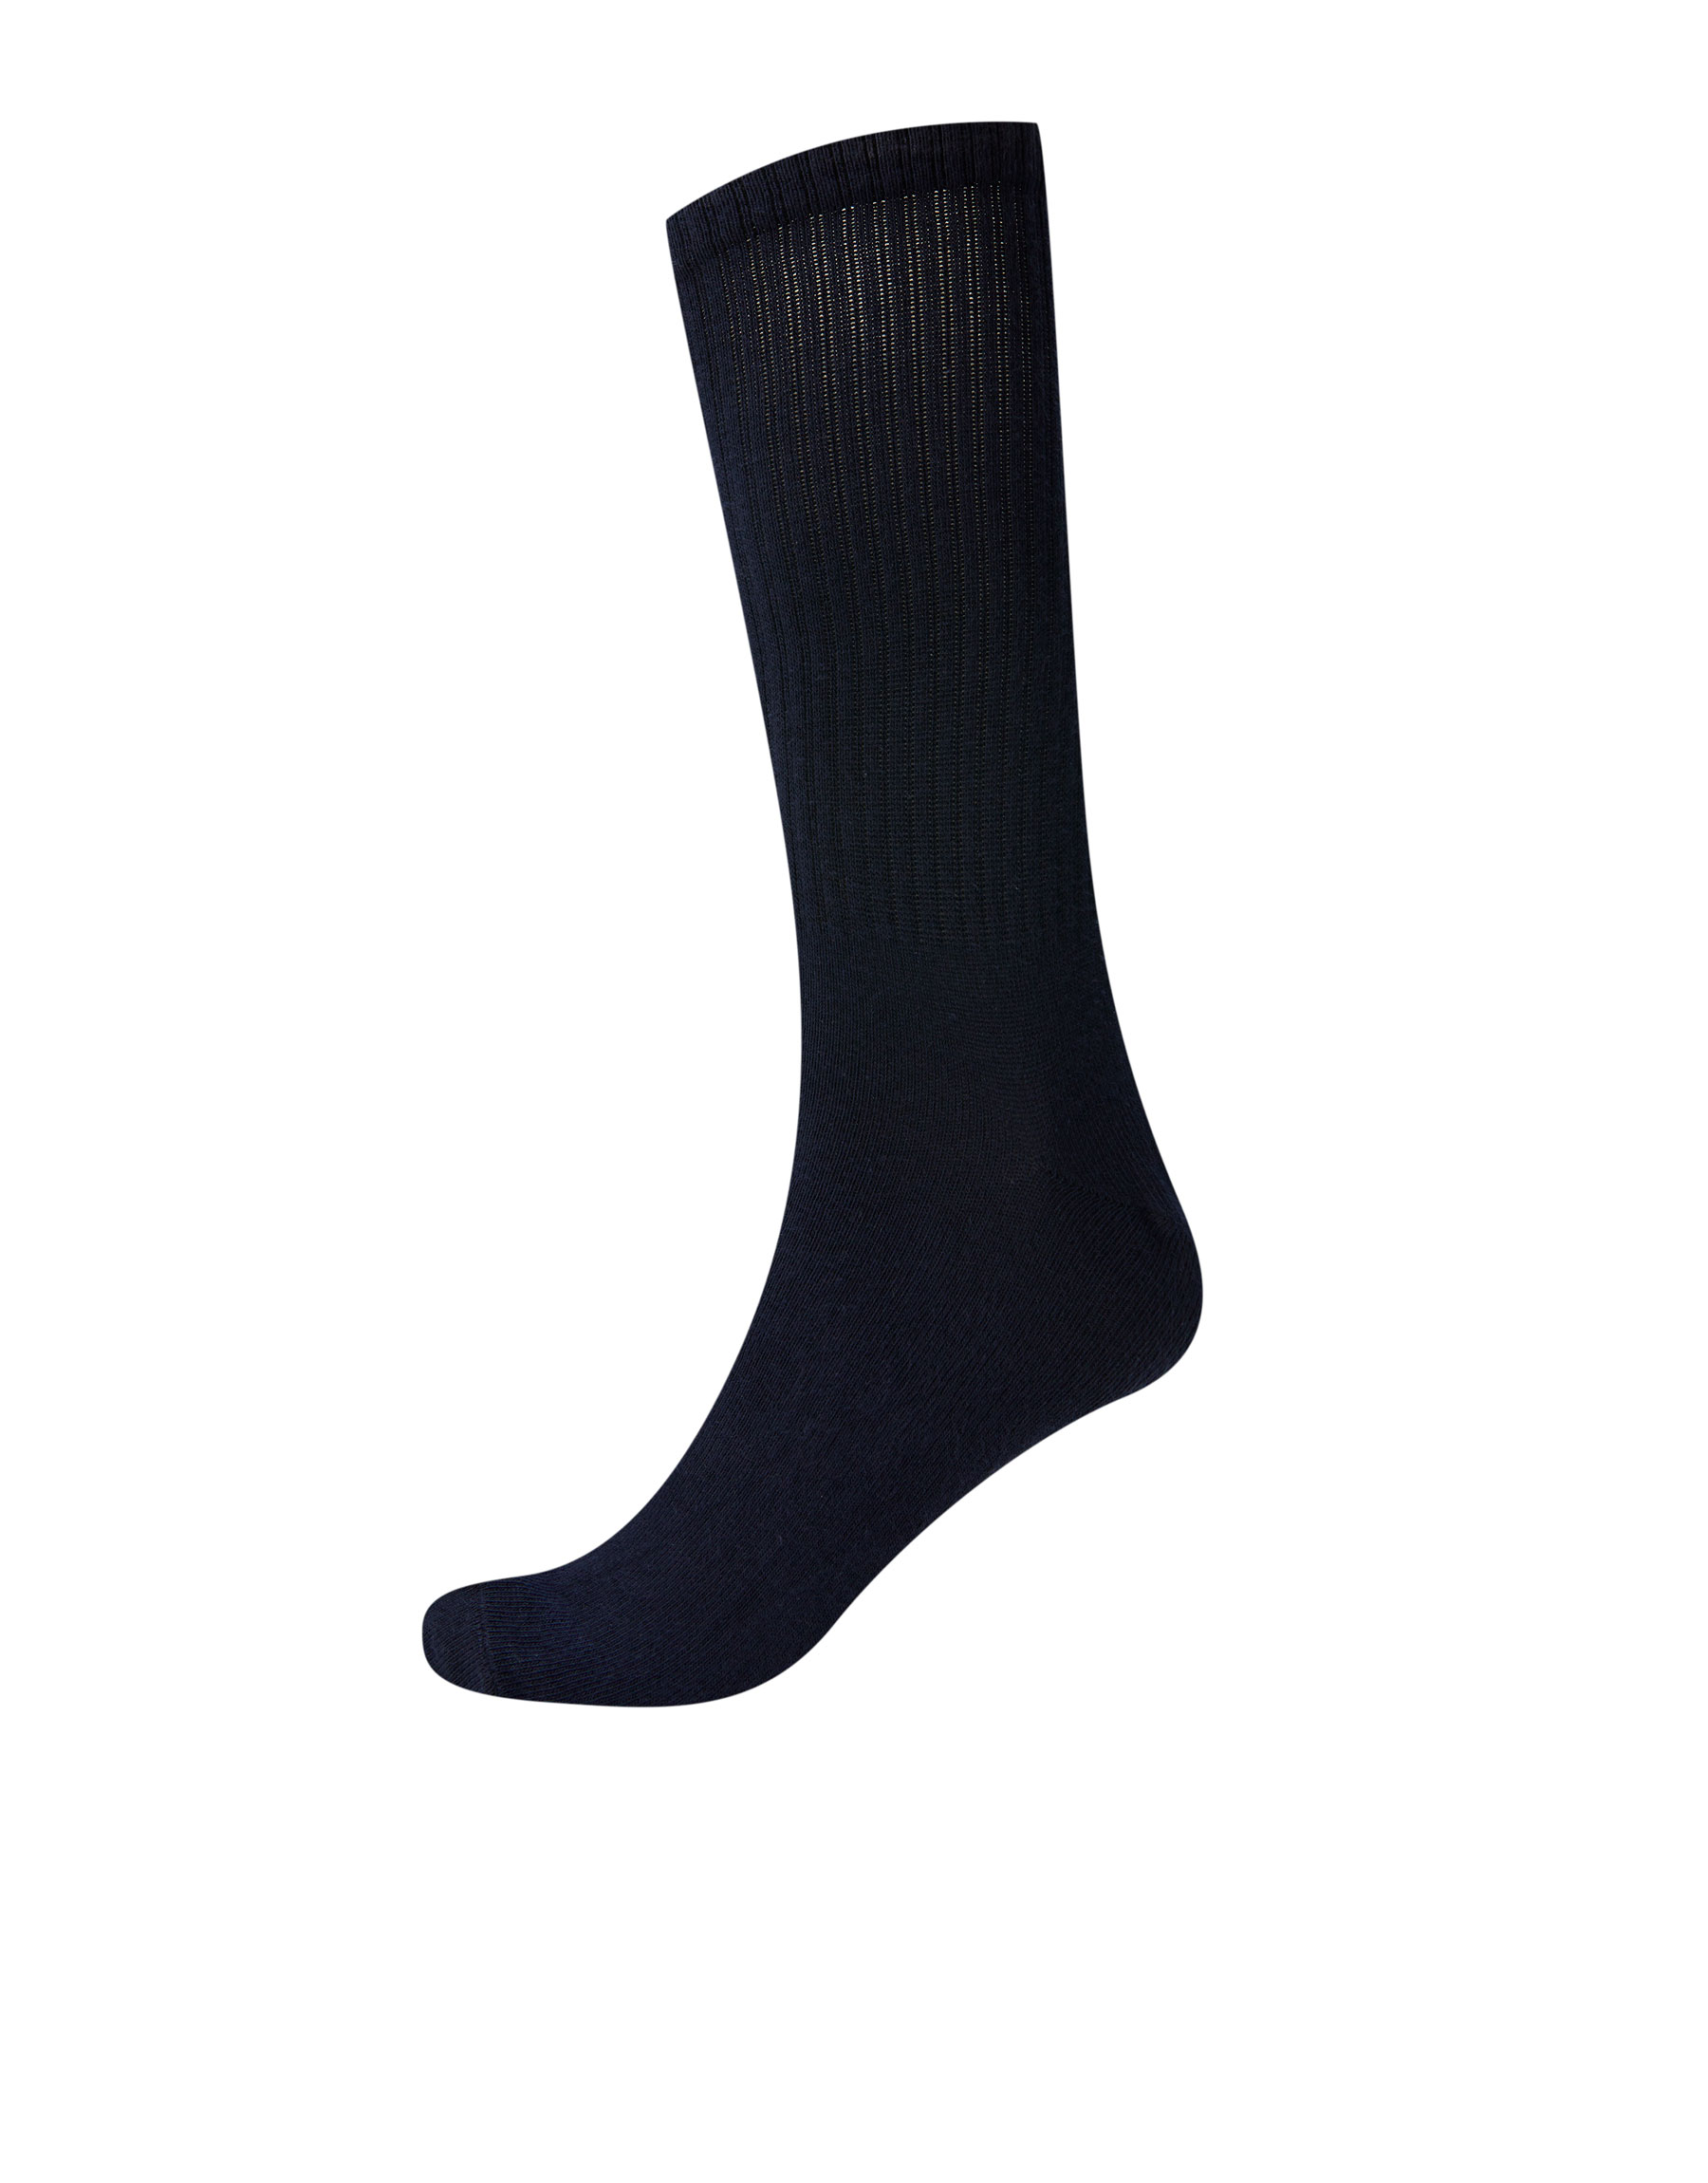 Цветные спортивные носки из рифленого трикотажа МОРСКОЙ ЯРКО-СИНИЙ Pull & Bear